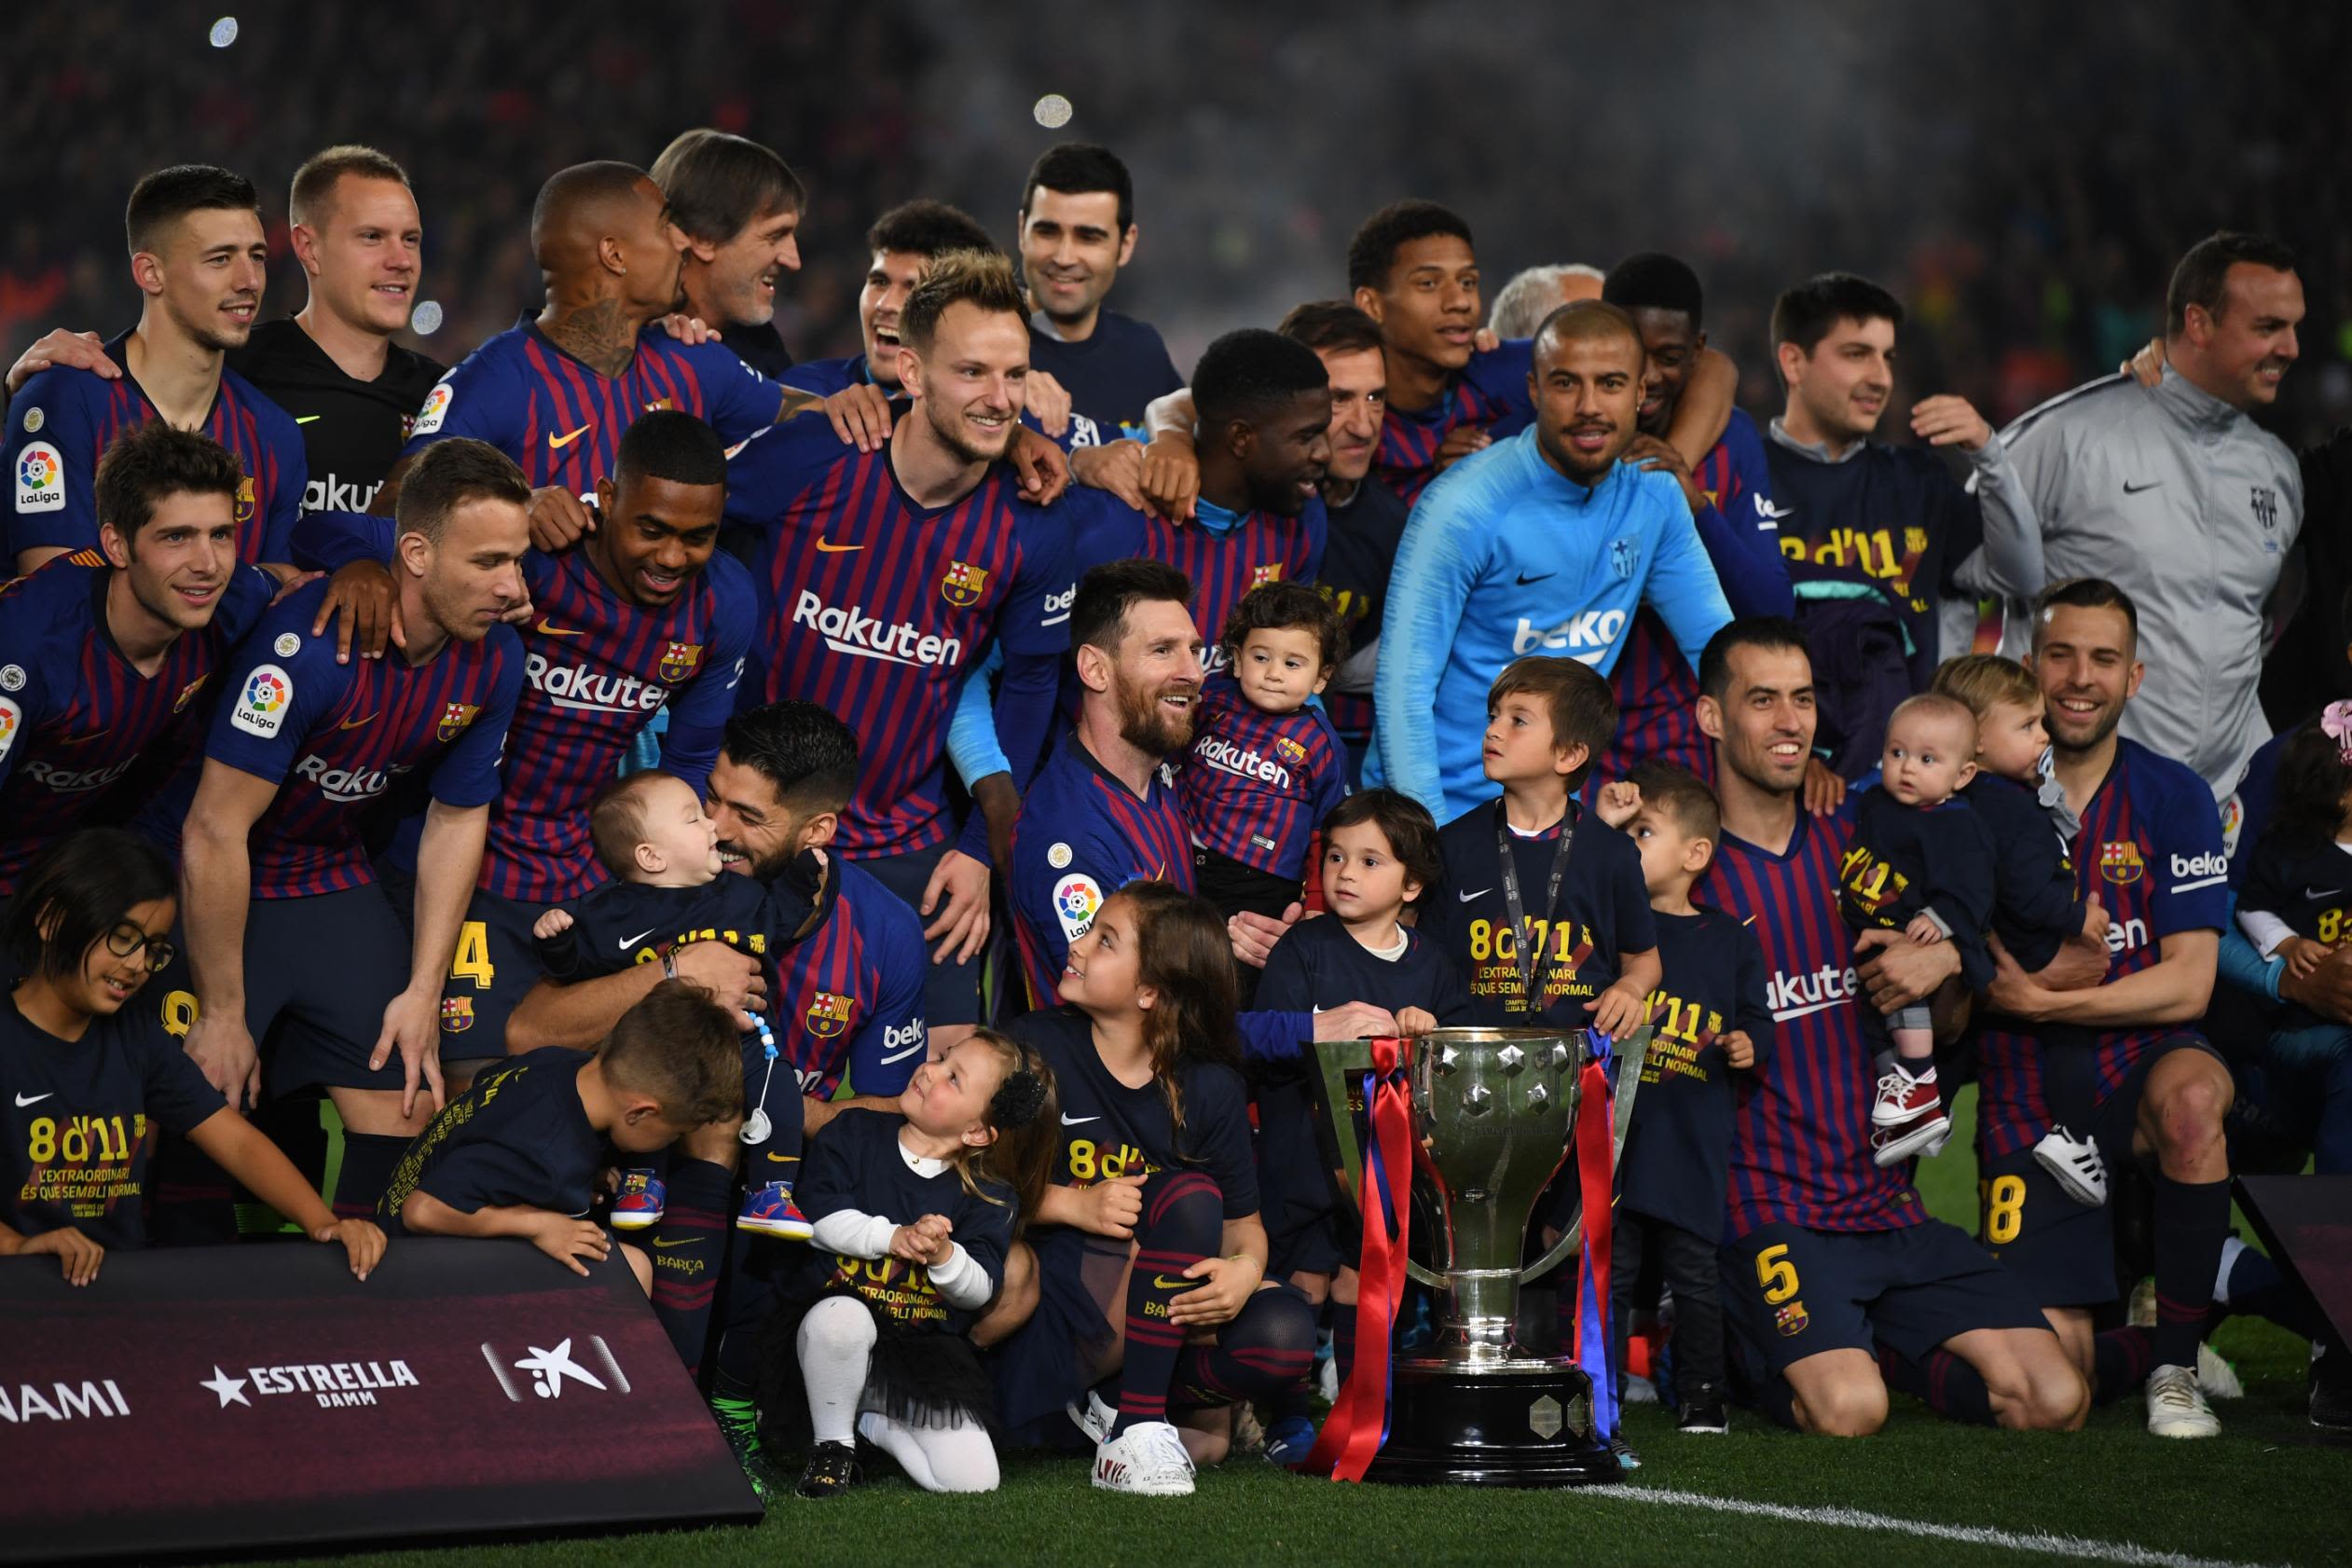 Barcelona La Liga title after Lionel Messi winner |